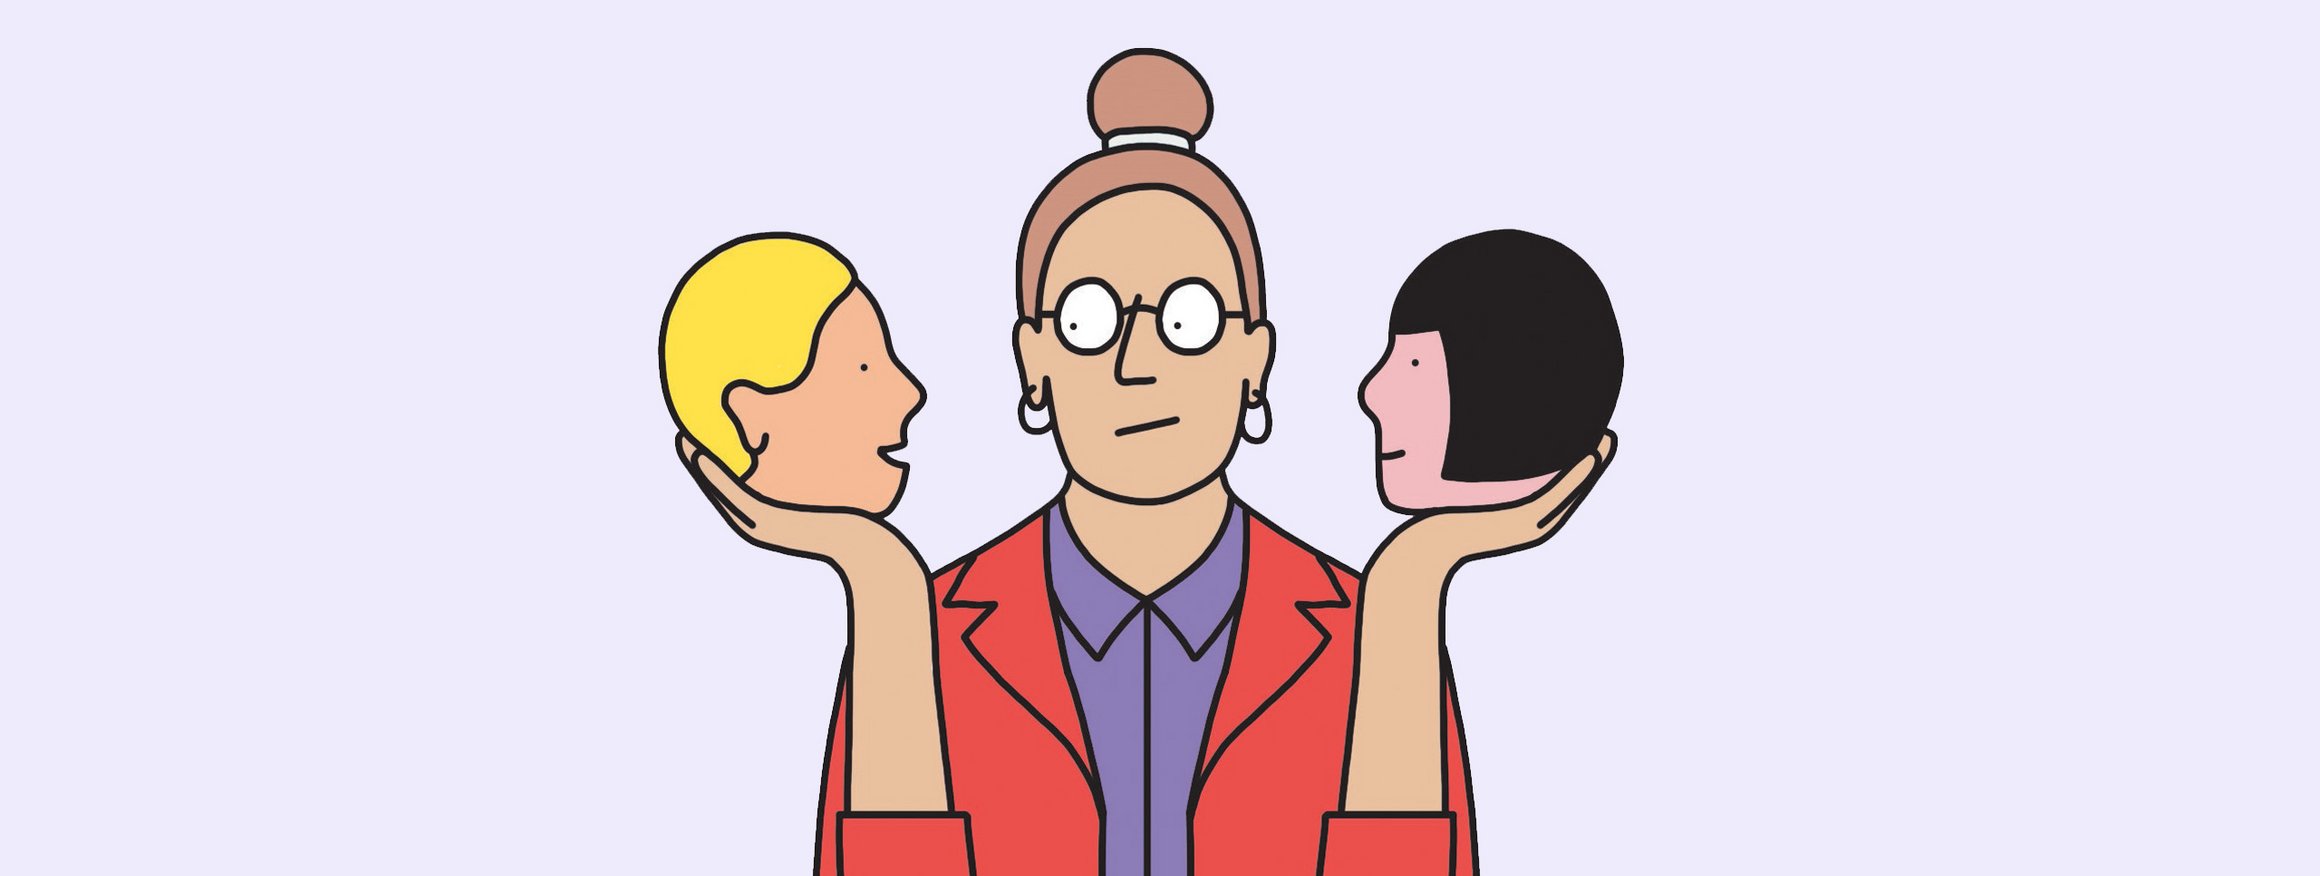 Die Illustration zeigt eine Frau, die je einen Kopf eines Freundes in der Hand hält, die ihr raten und Tipps geben, dahinter verbergen sich jedoch unerwünschte Motive